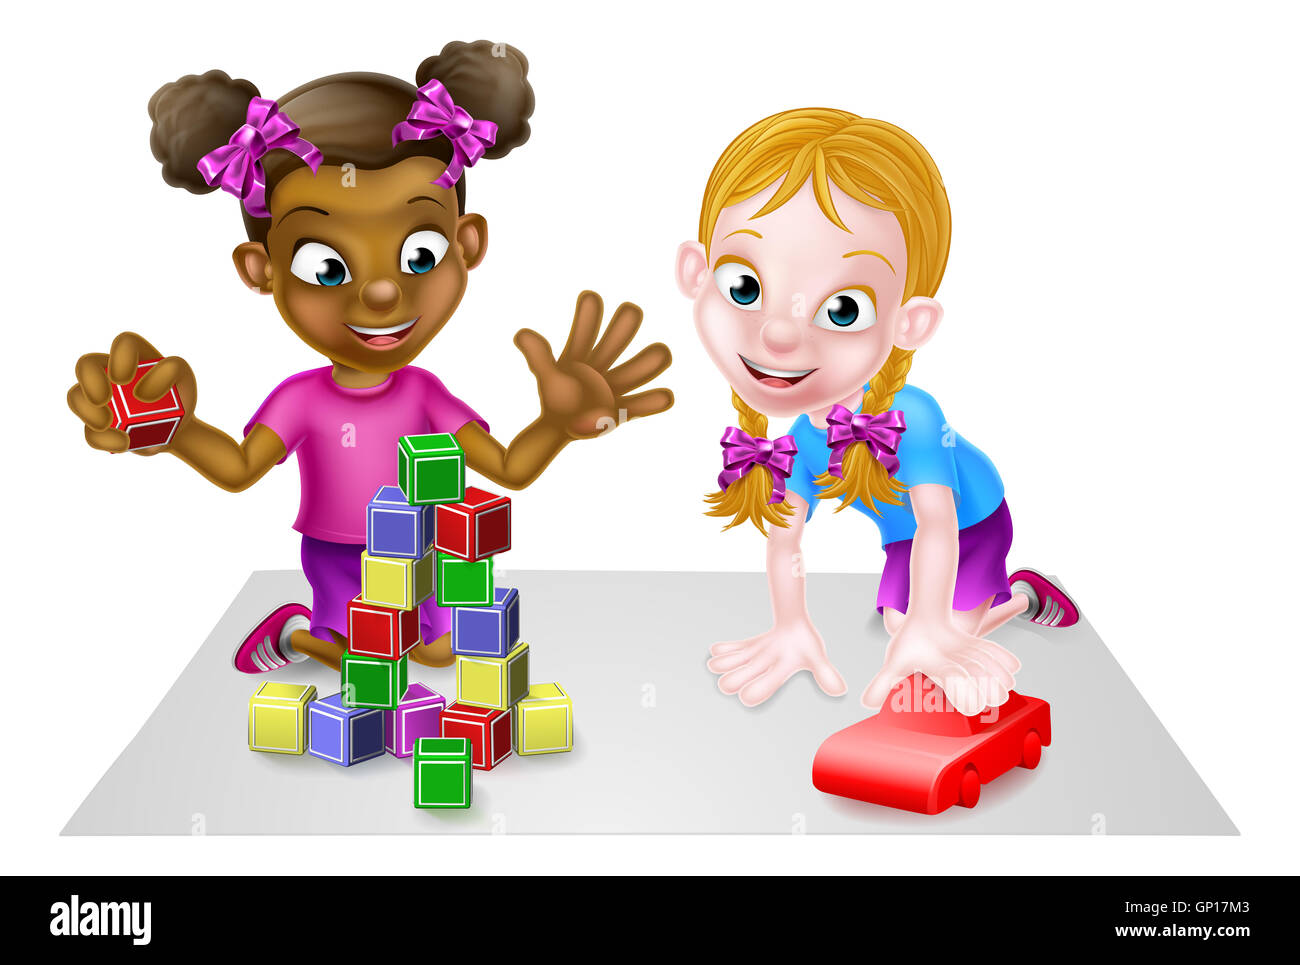 Caricature de jeunes filles, jouant avec des jouets, avec des blocs de construction et jouets un jouet voiture rouge Banque D'Images